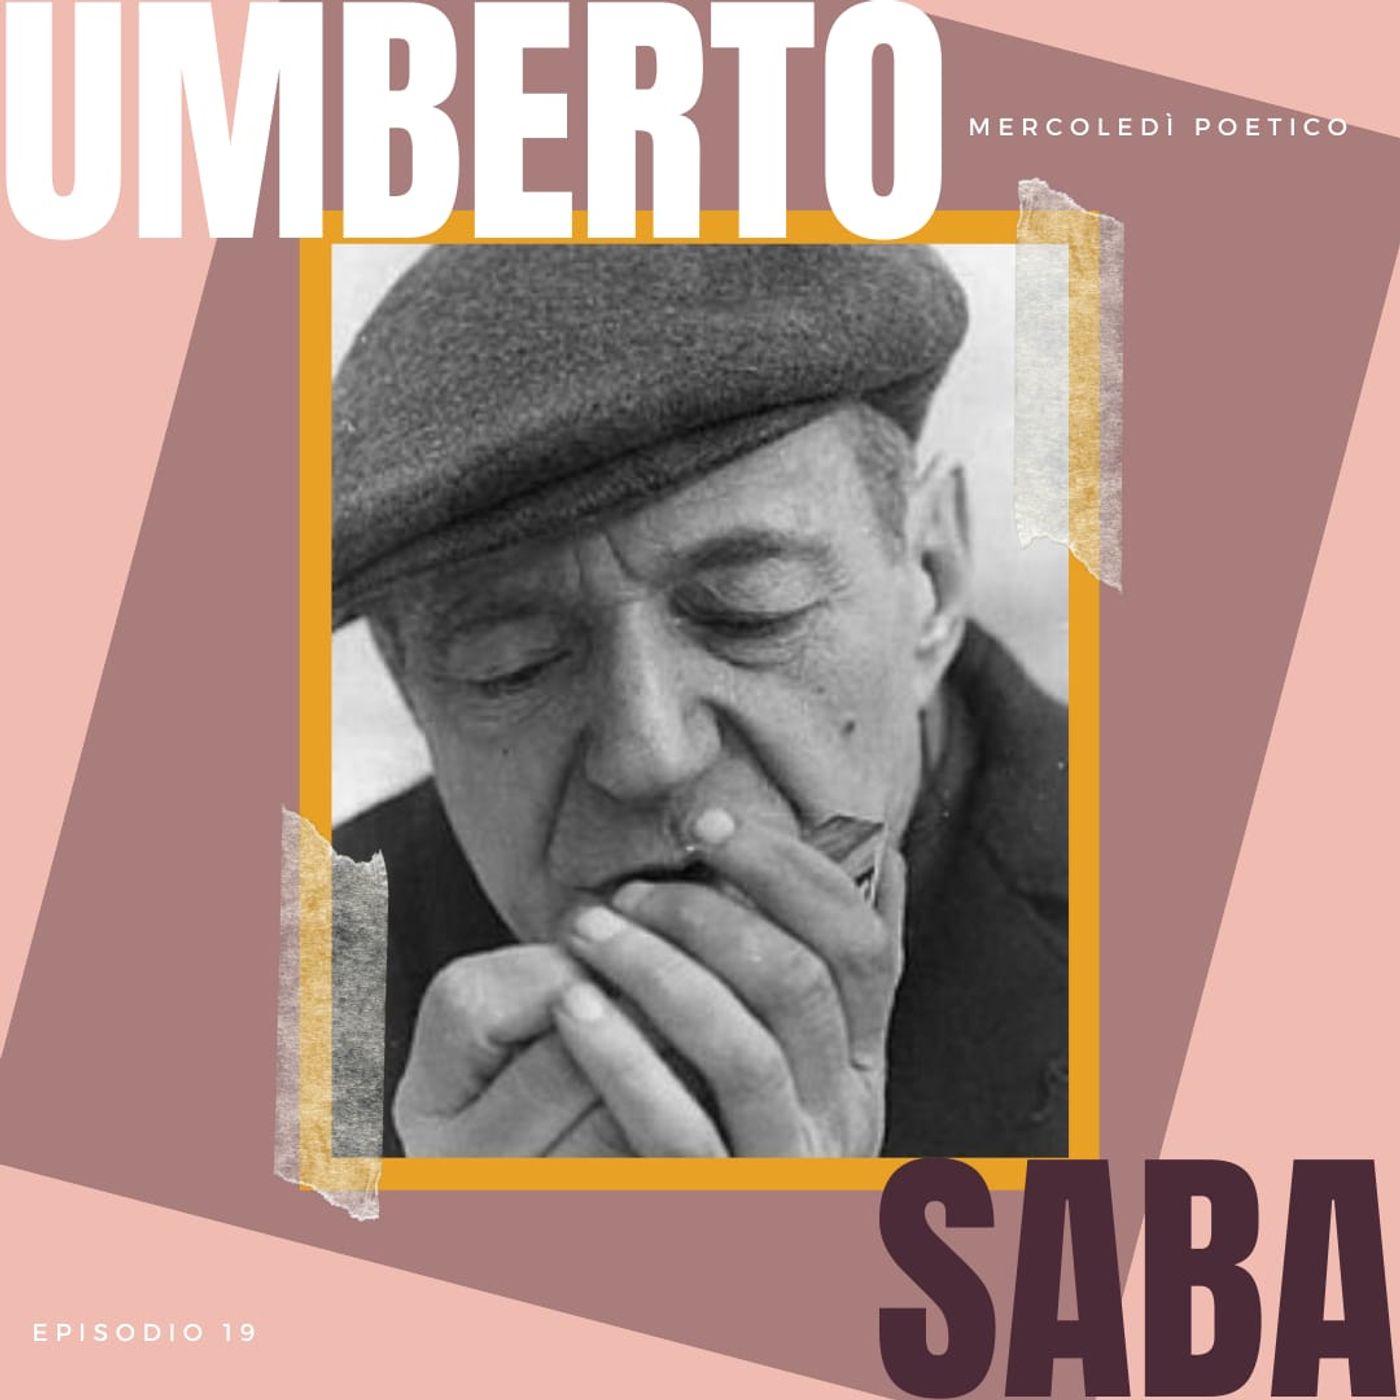 Mercoledì poetico - Ep.19, Umberto Saba